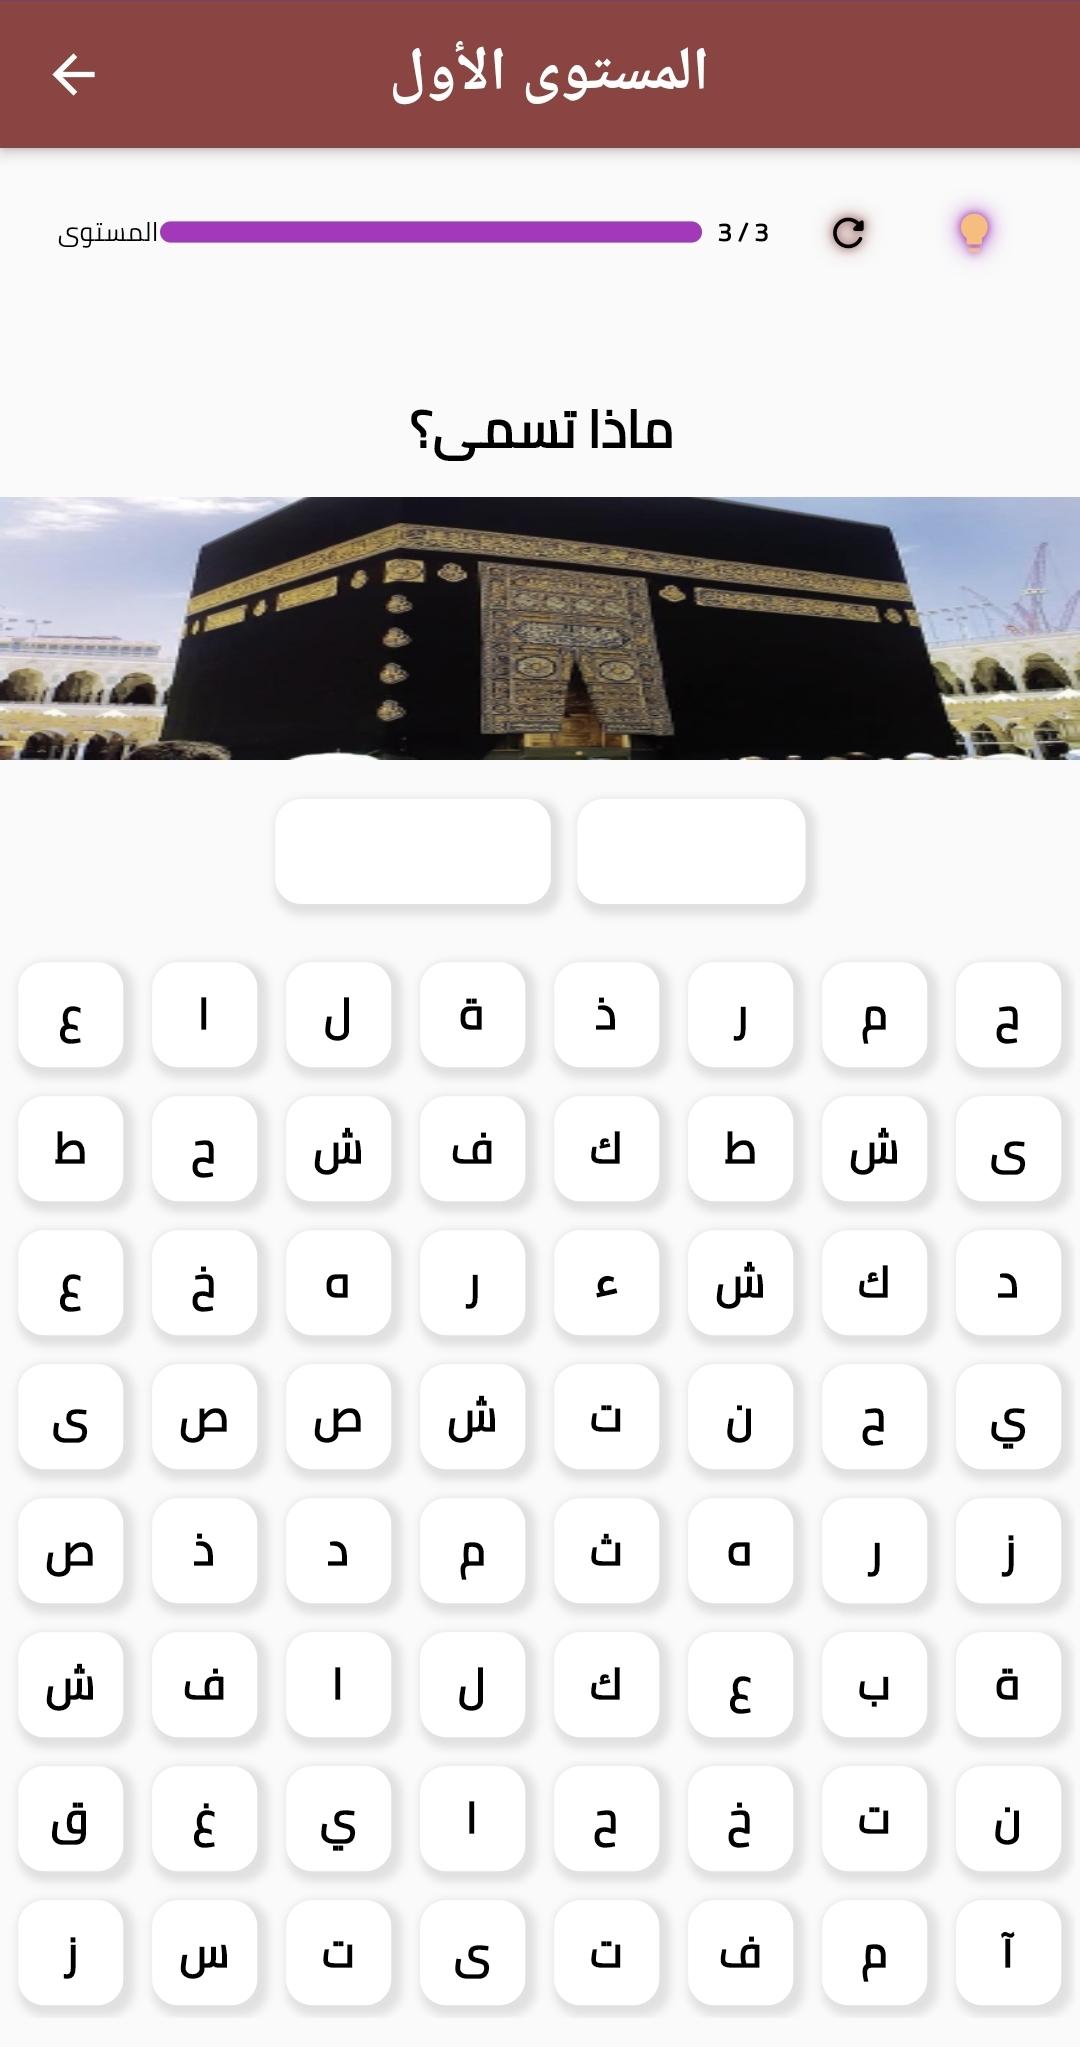 Android용 كلمات متقاطعة بالعربي APK 다운로드